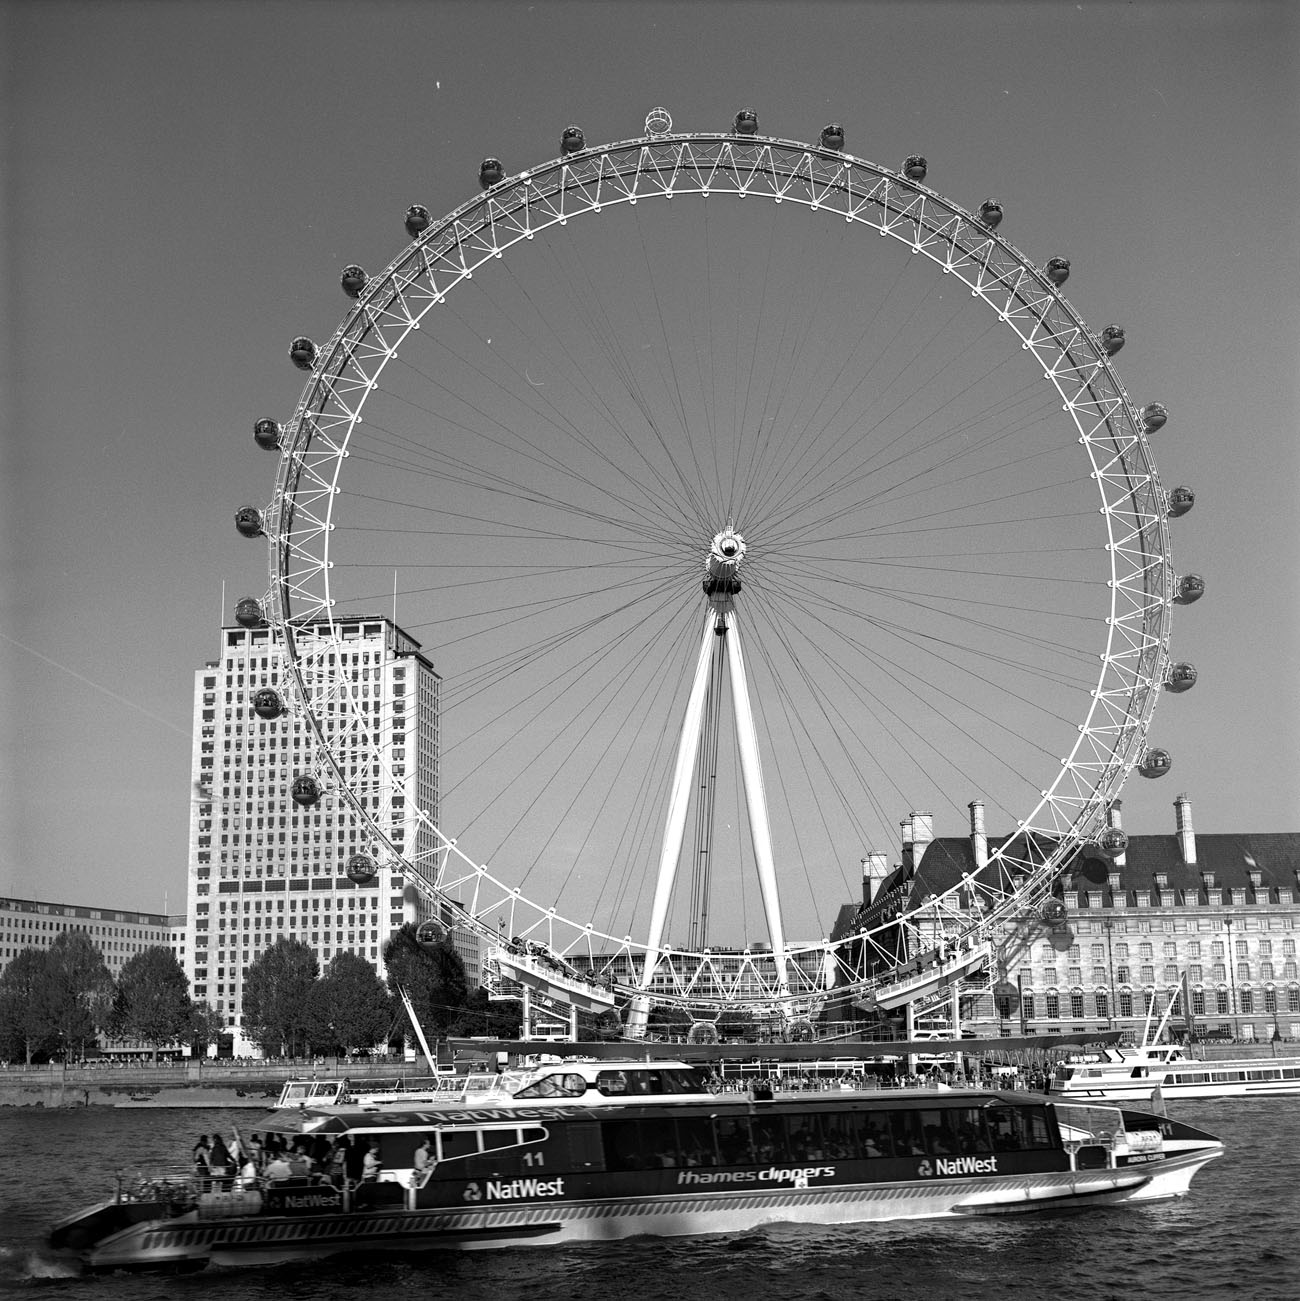 fotka / image London Eye, Summer in London